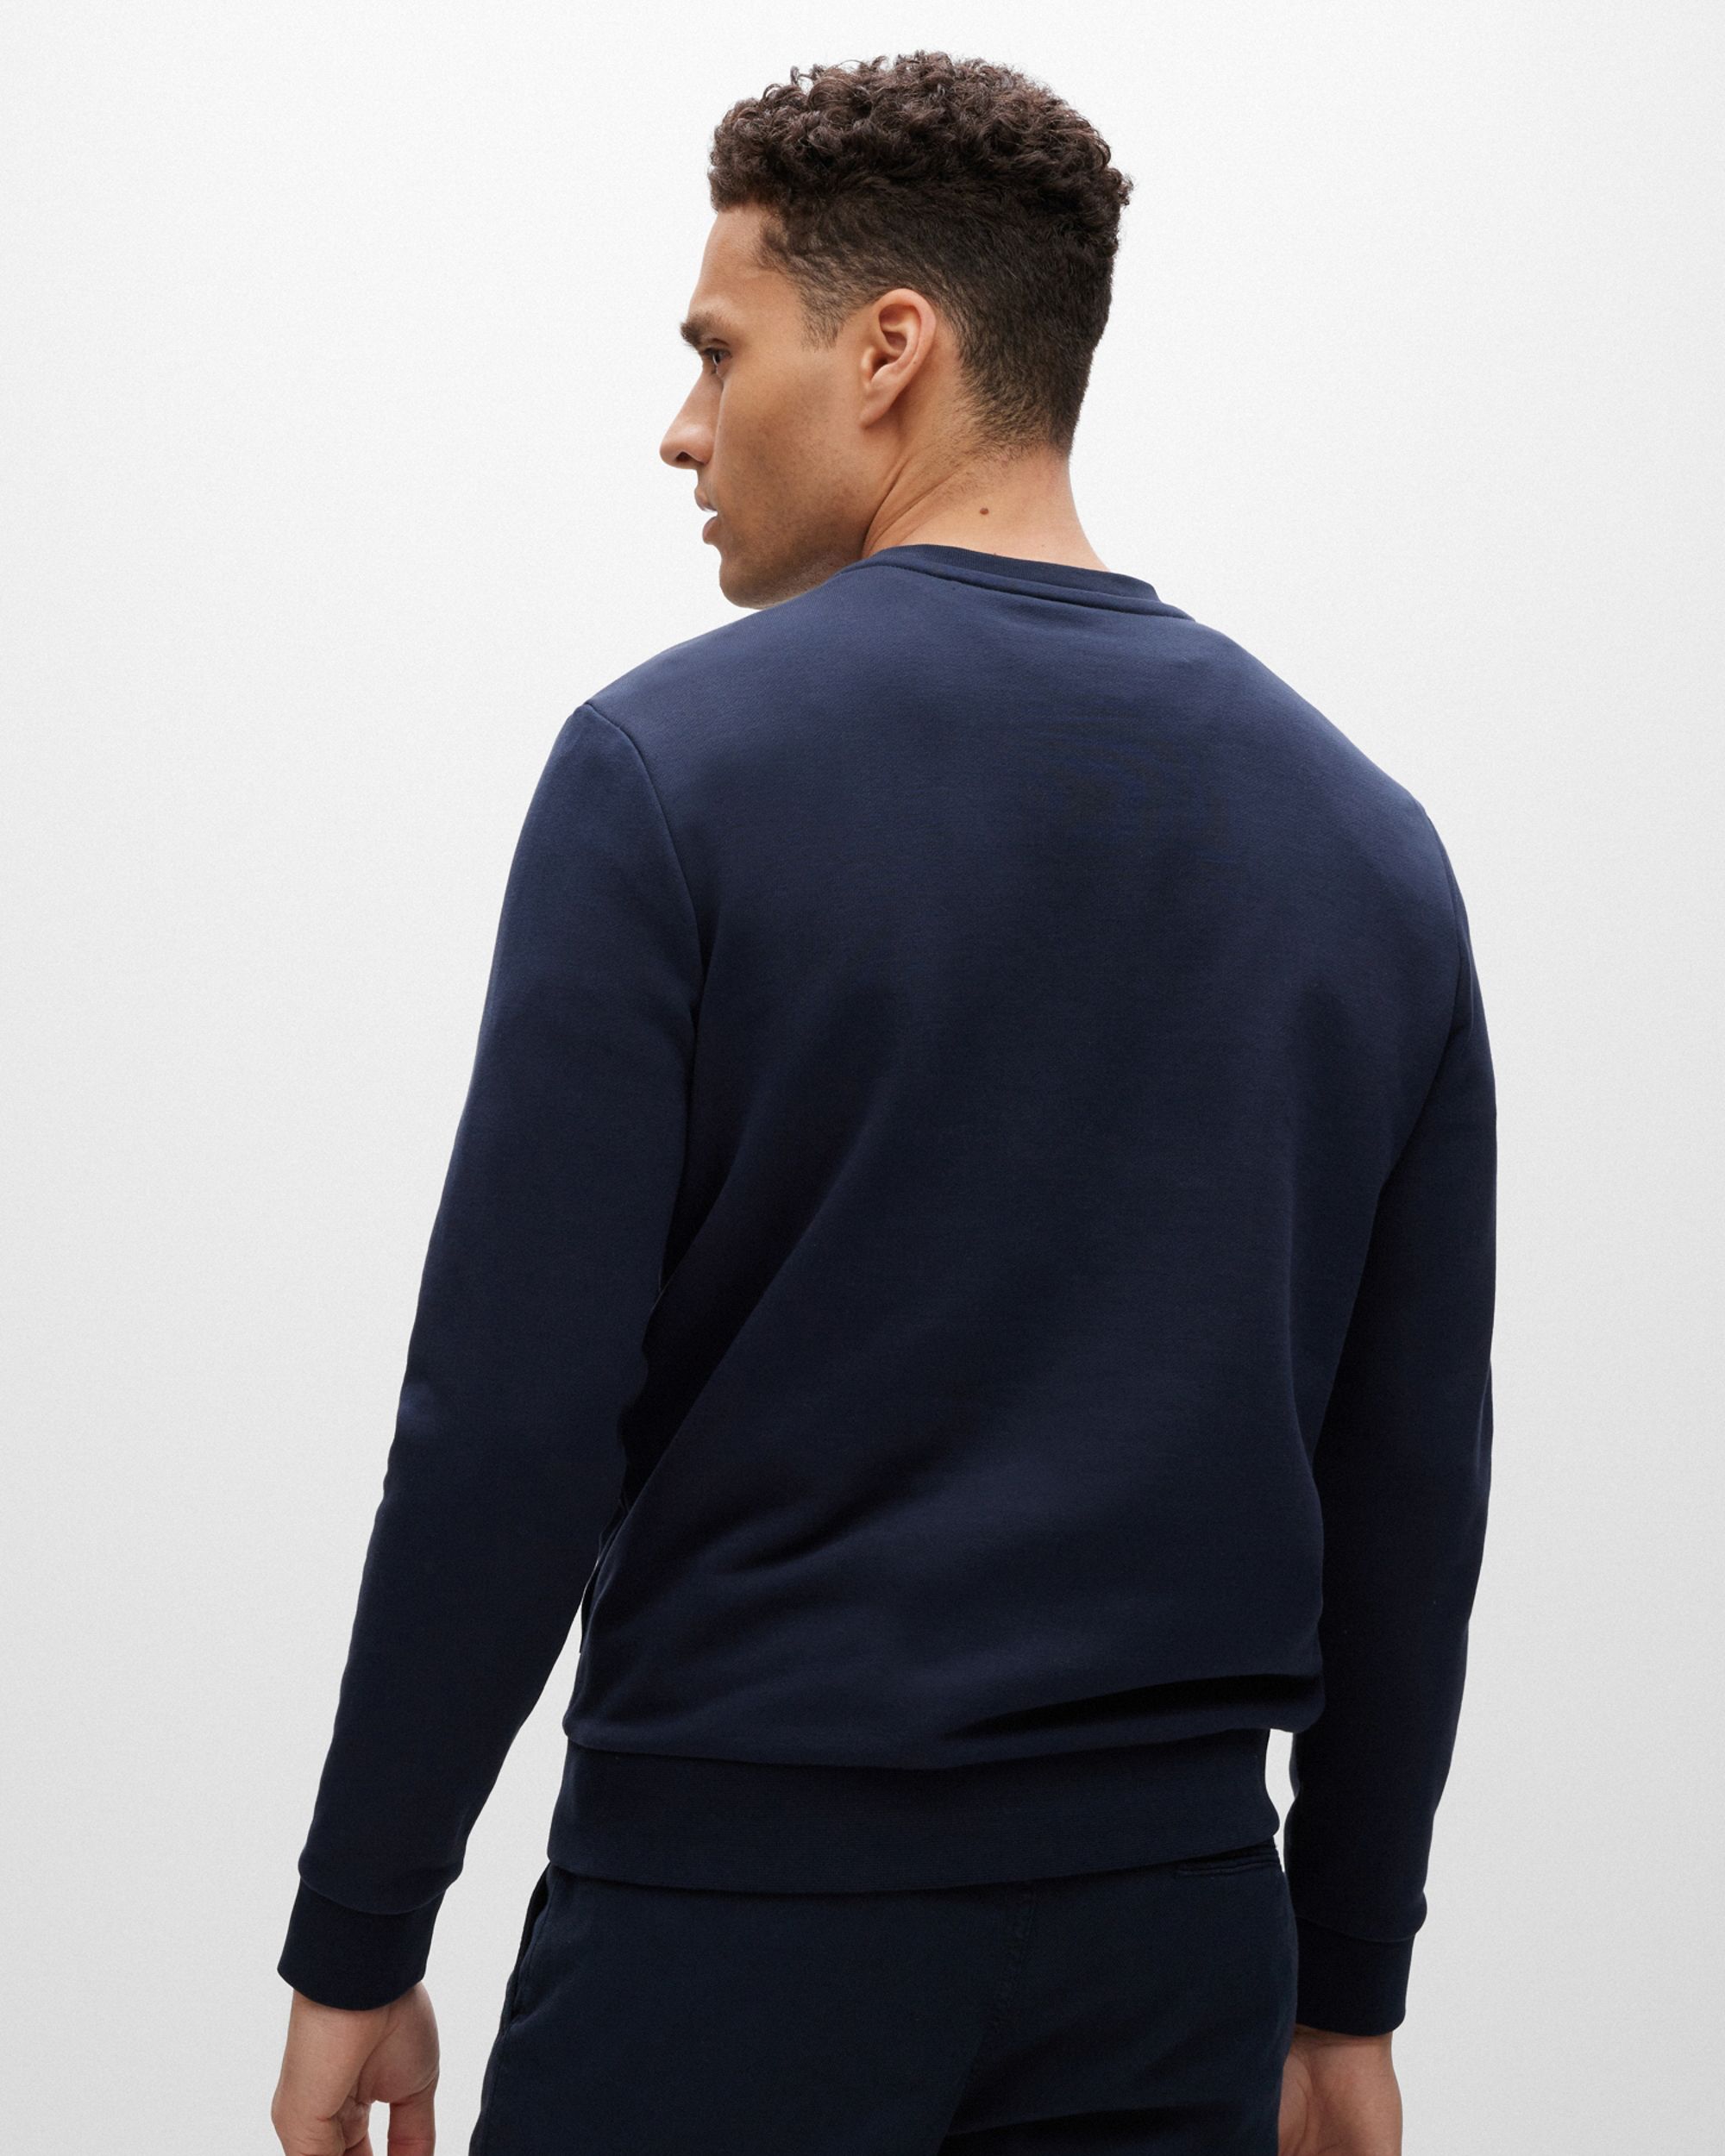 Hugo Boss Menswear Sweater Donker blauw 082287-002-XL